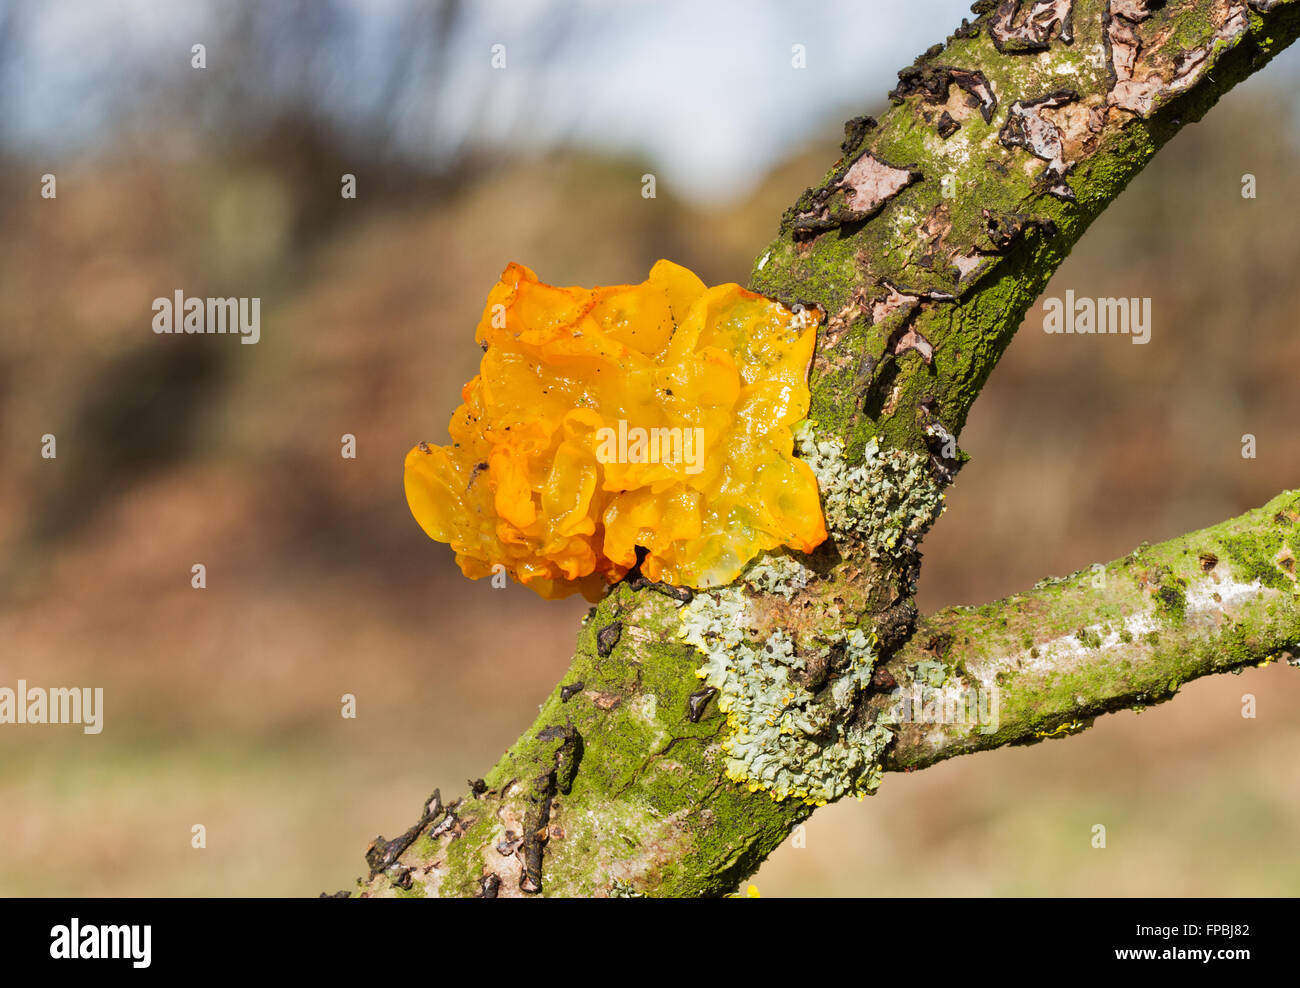 Golden jelly fungus (Tremella mesenterica) sur la branche morte d'un chêne Banque D'Images